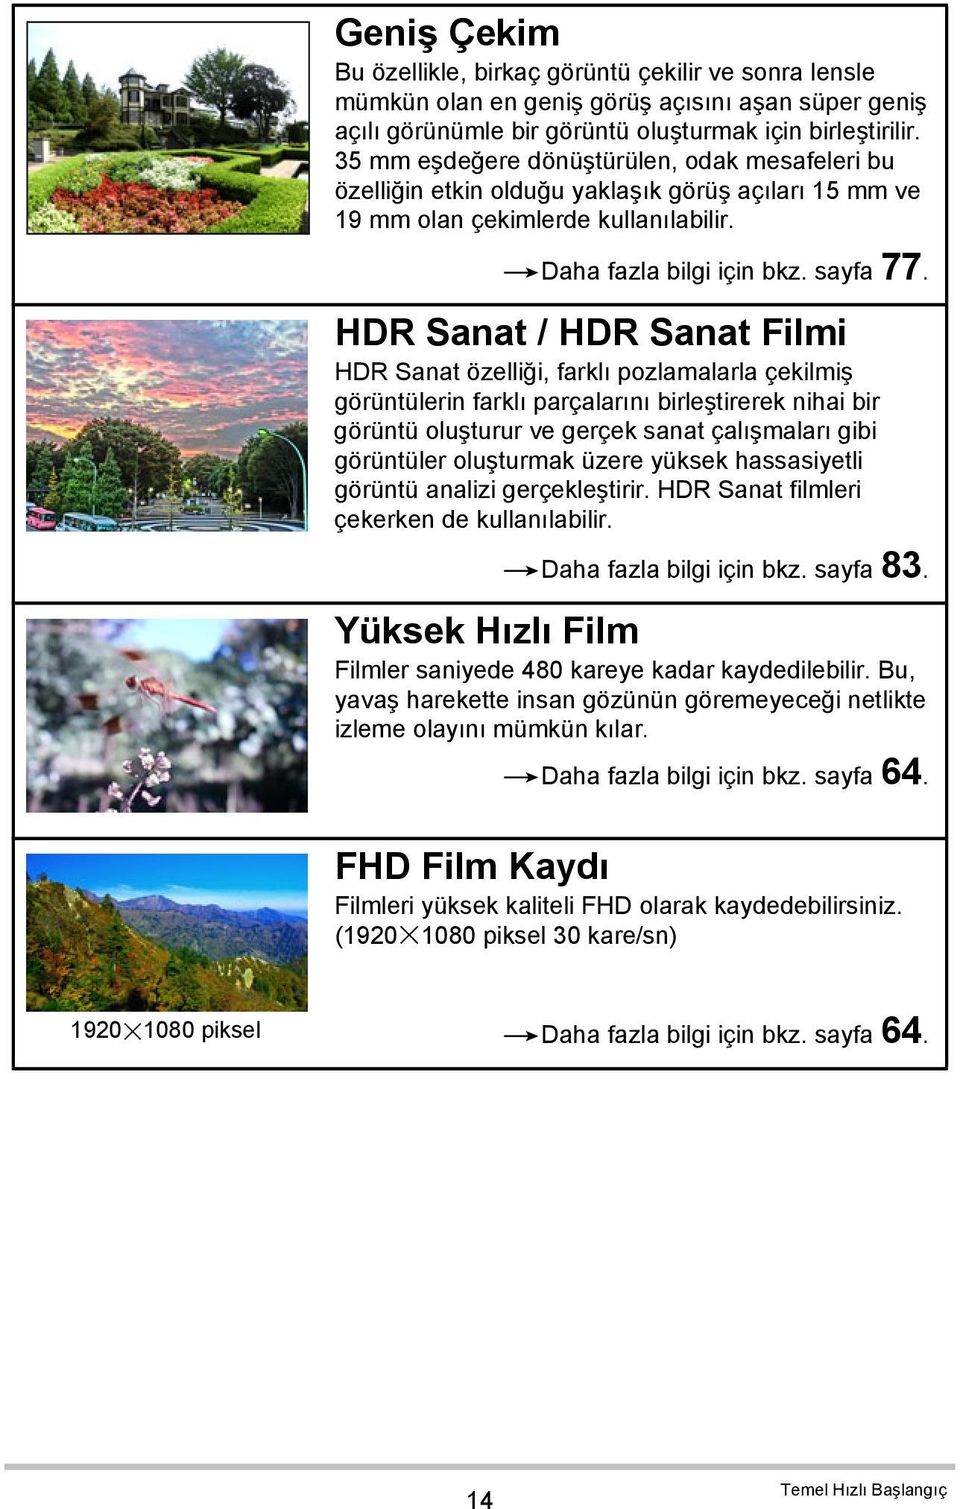 HDR Sanat / HDR Sanat Filmi HDR Sanat özelliği, farklı pozlamalarla çekilmiş görüntülerin farklı parçalarını birleştirerek nihai bir görüntü oluşturur ve gerçek sanat çalışmaları gibi görüntüler